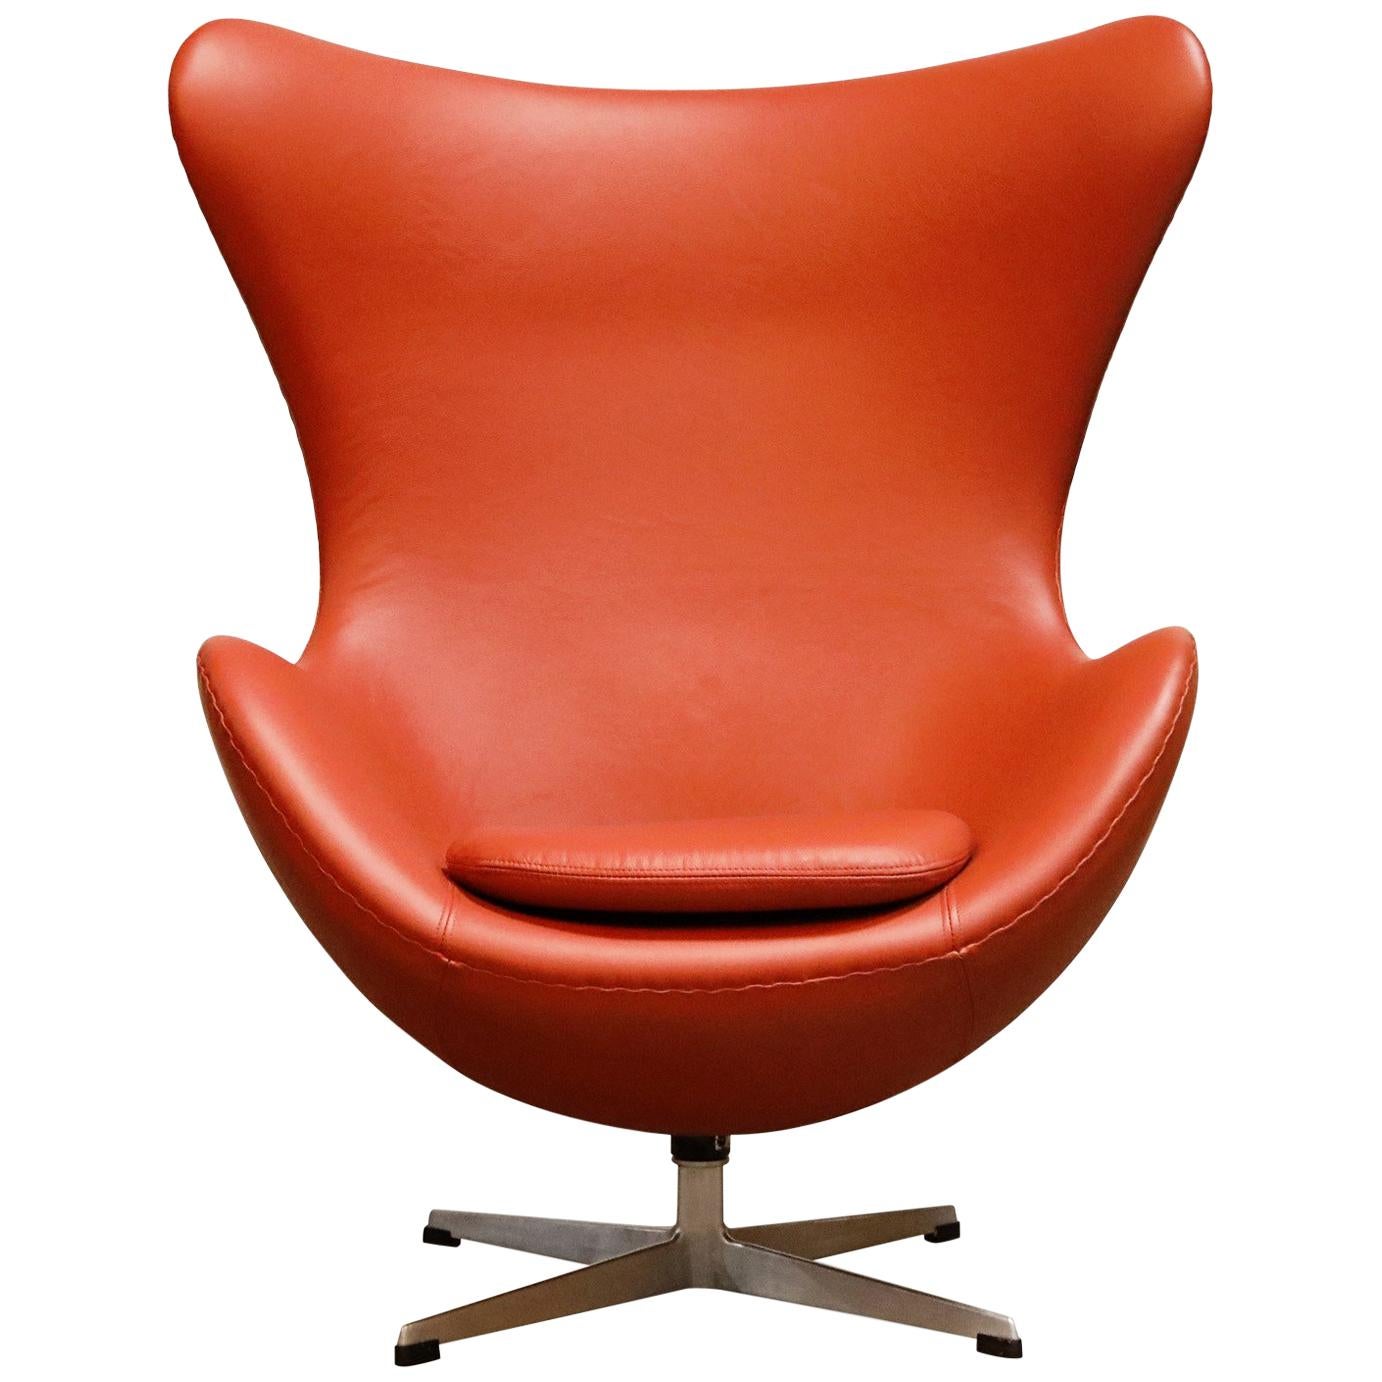 Egg Chair in Burnt Orange Leather, Arne Jacobsen for Fritz Hansen, Signed 1963